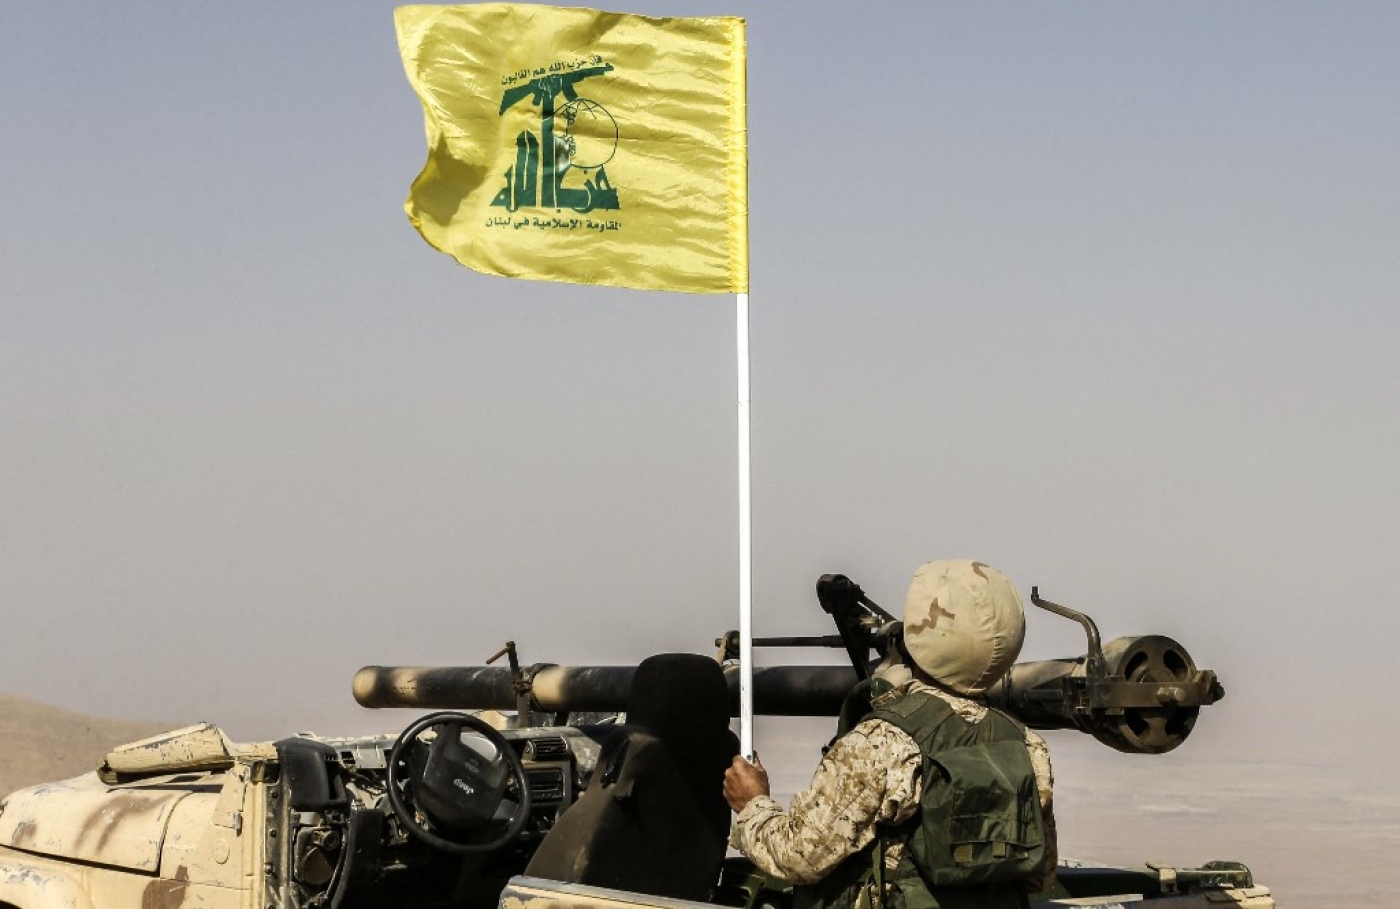 Le retrait du Hezbollah et des Gardiens de la révolution du Sud syrien est un nouveau coup dur pour la stratégie d’élargissement du front contre Israël. La décision a été prise à la demande personnelle du chef de l’État syrien sur les conseils de l’état-major de son armée (AFP/Louai Beshara) 